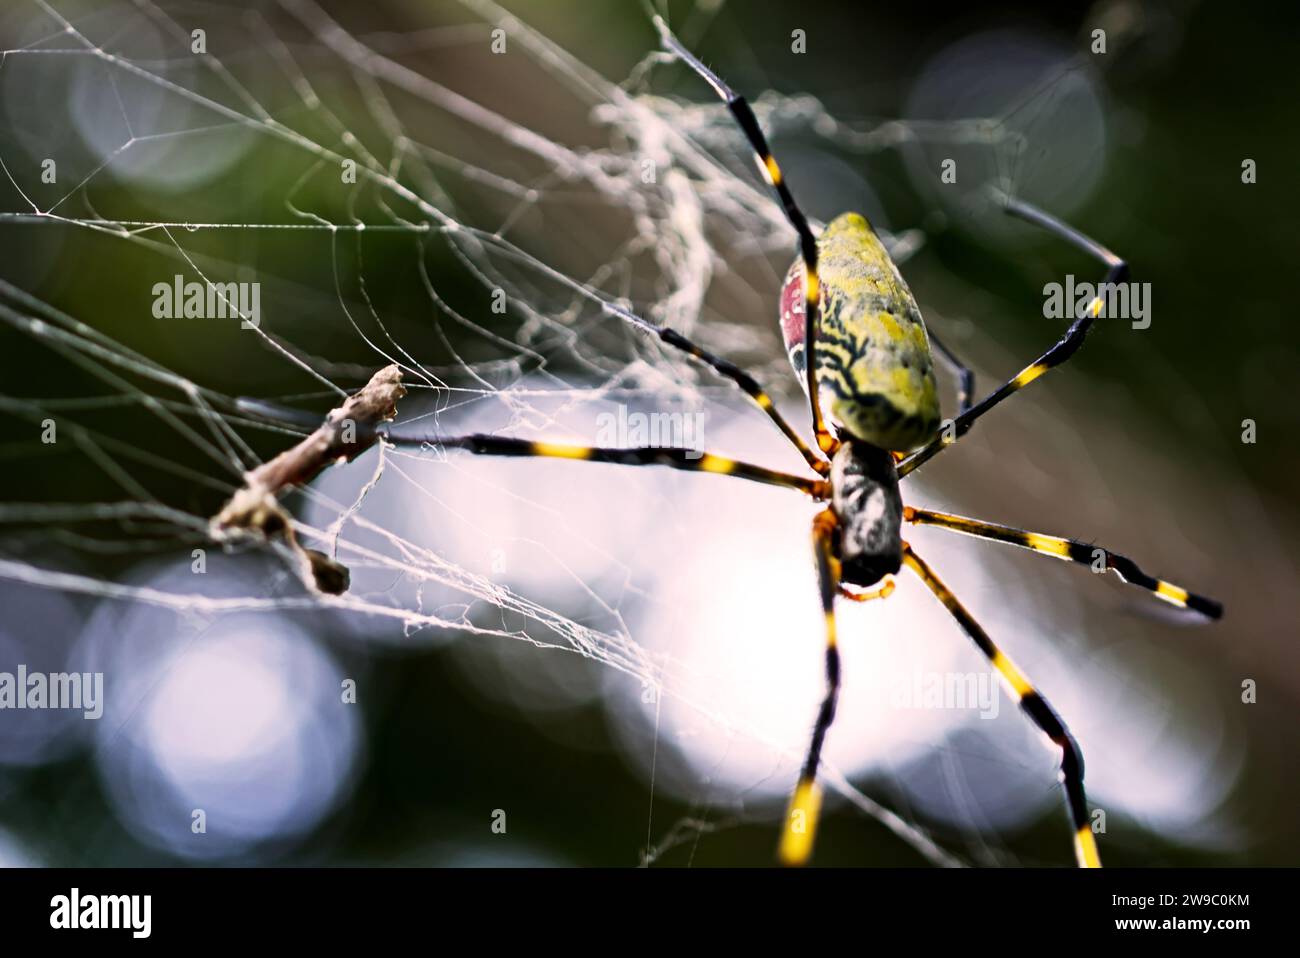 Joro araignée sur une toile d'araignée Banque D'Images